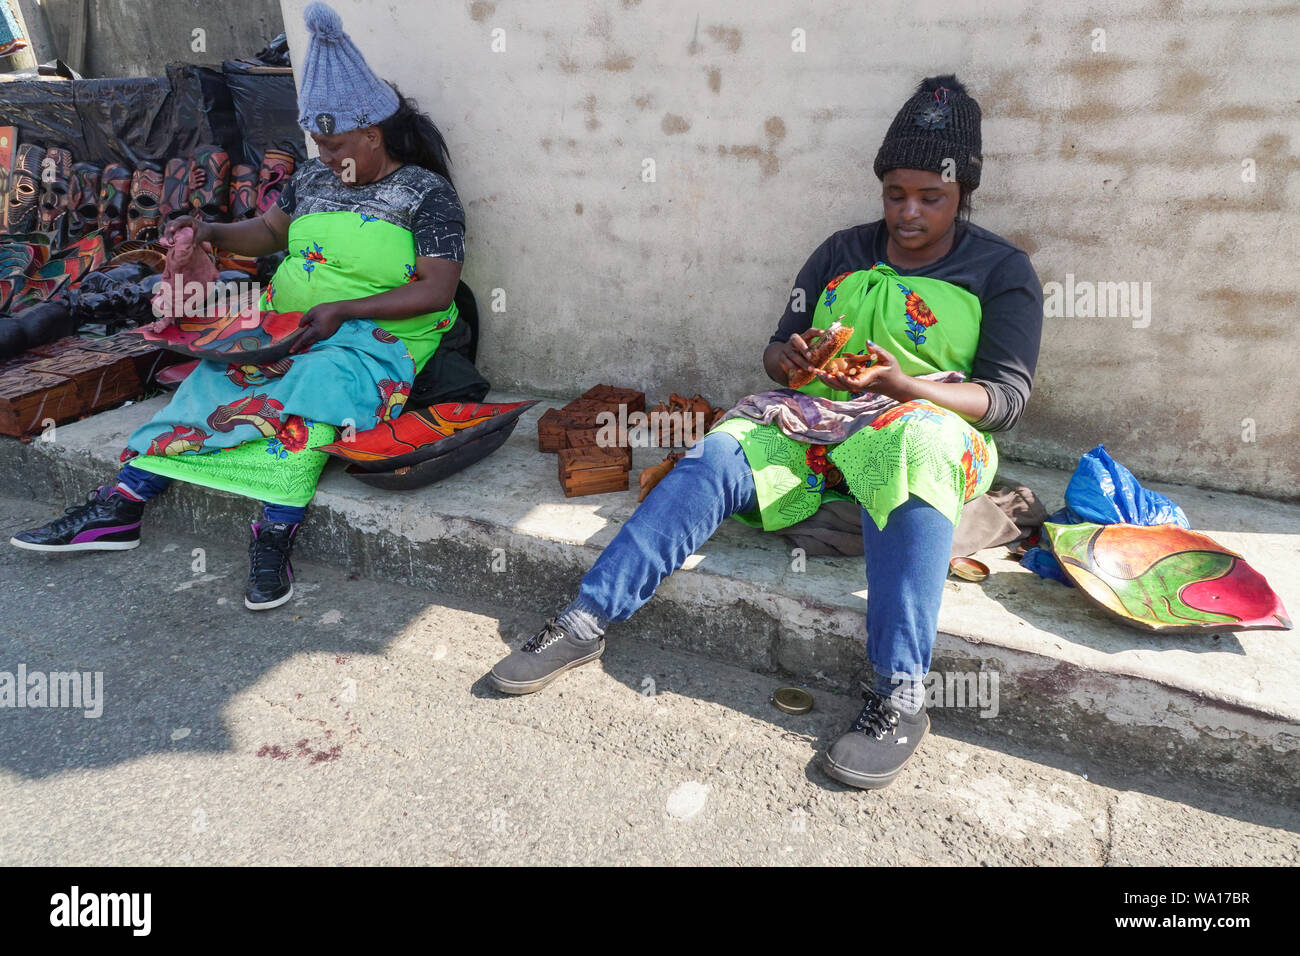 Deux femmes noires africaines ou les femmes vendeuses de rue travail assis sur des produits ou articles en bois à l'extérieur de leurs stalles dans dieux,fenêtre Mpumalanga, Afrique du Sud Banque D'Images